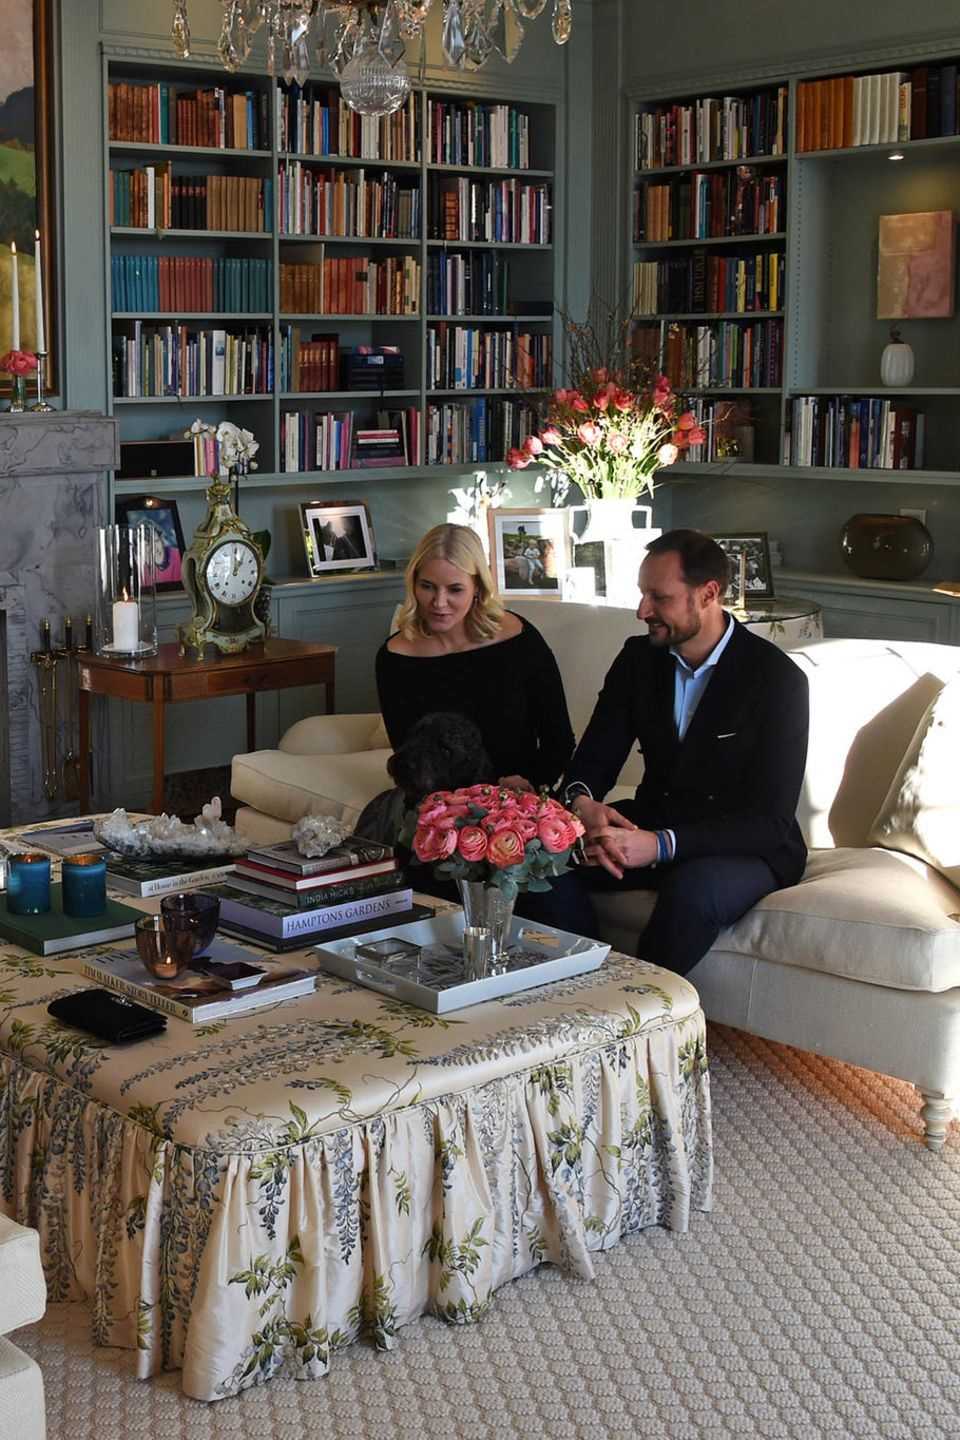 ... denn im Februar 2018 luden Prinz Haakon von Norwegen und Prinzessin Mette-Marit Herzogin Catherine und Prinz William in privater Runde zu sich nach Hause ein. Das Wohnzimmer der norwegischen Royals Begeistert durch liebevolle Details. Überall sind kleine Fotografien ausgestellt und auf dem schulterhohen Marmor-Kamin steht eine antike Uhr. Egal ob Bücherregal, Tischdecke oder Teppich, alles ist perfekt aufeinander abgestimmt. 